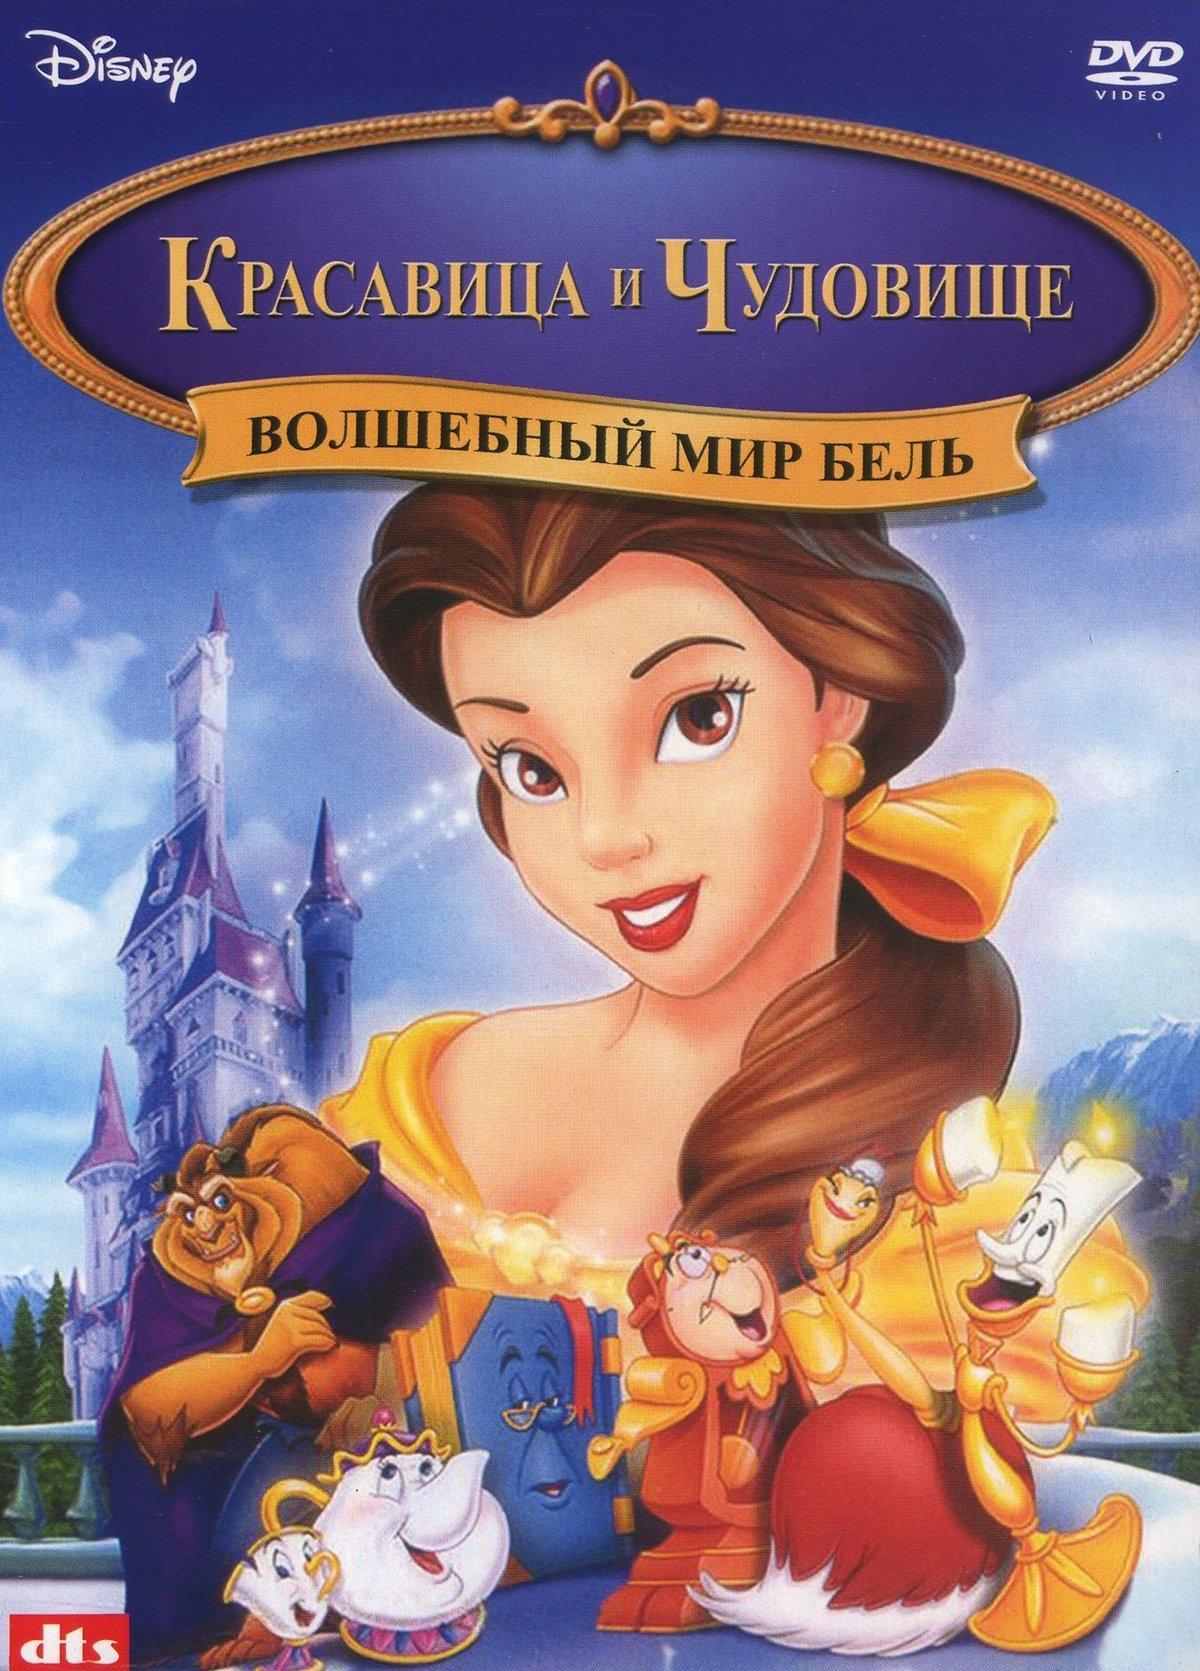 Постер фильма Волшебный мир Бель | Belle's Magical World